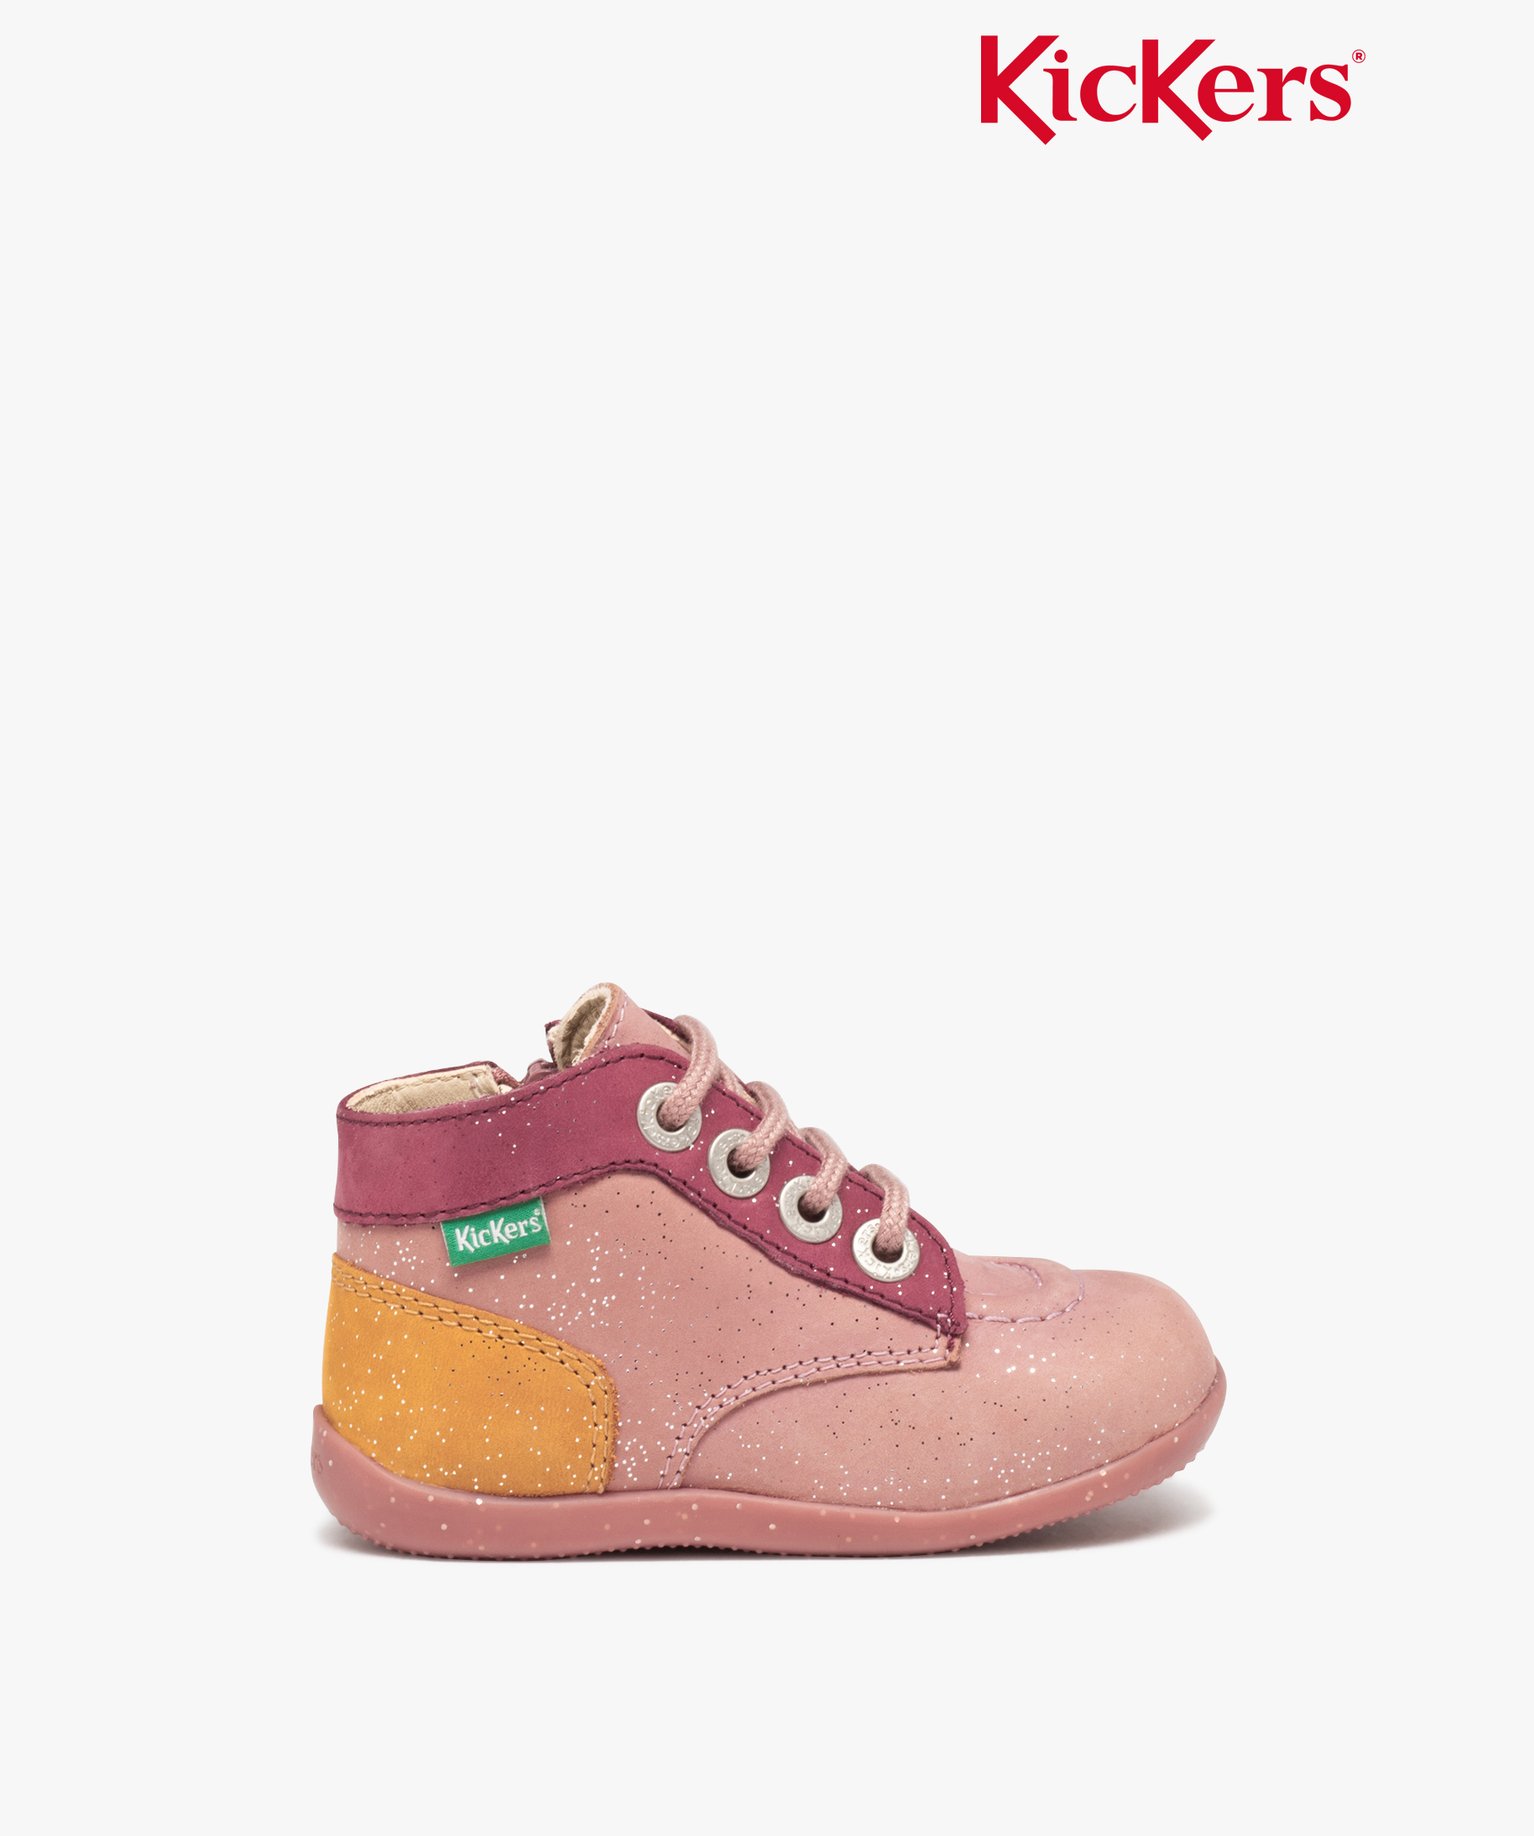 Chaussures premiers pas bébé fille en cuir imprimé fleuri - Kickers - 22 - rose - KICKERS